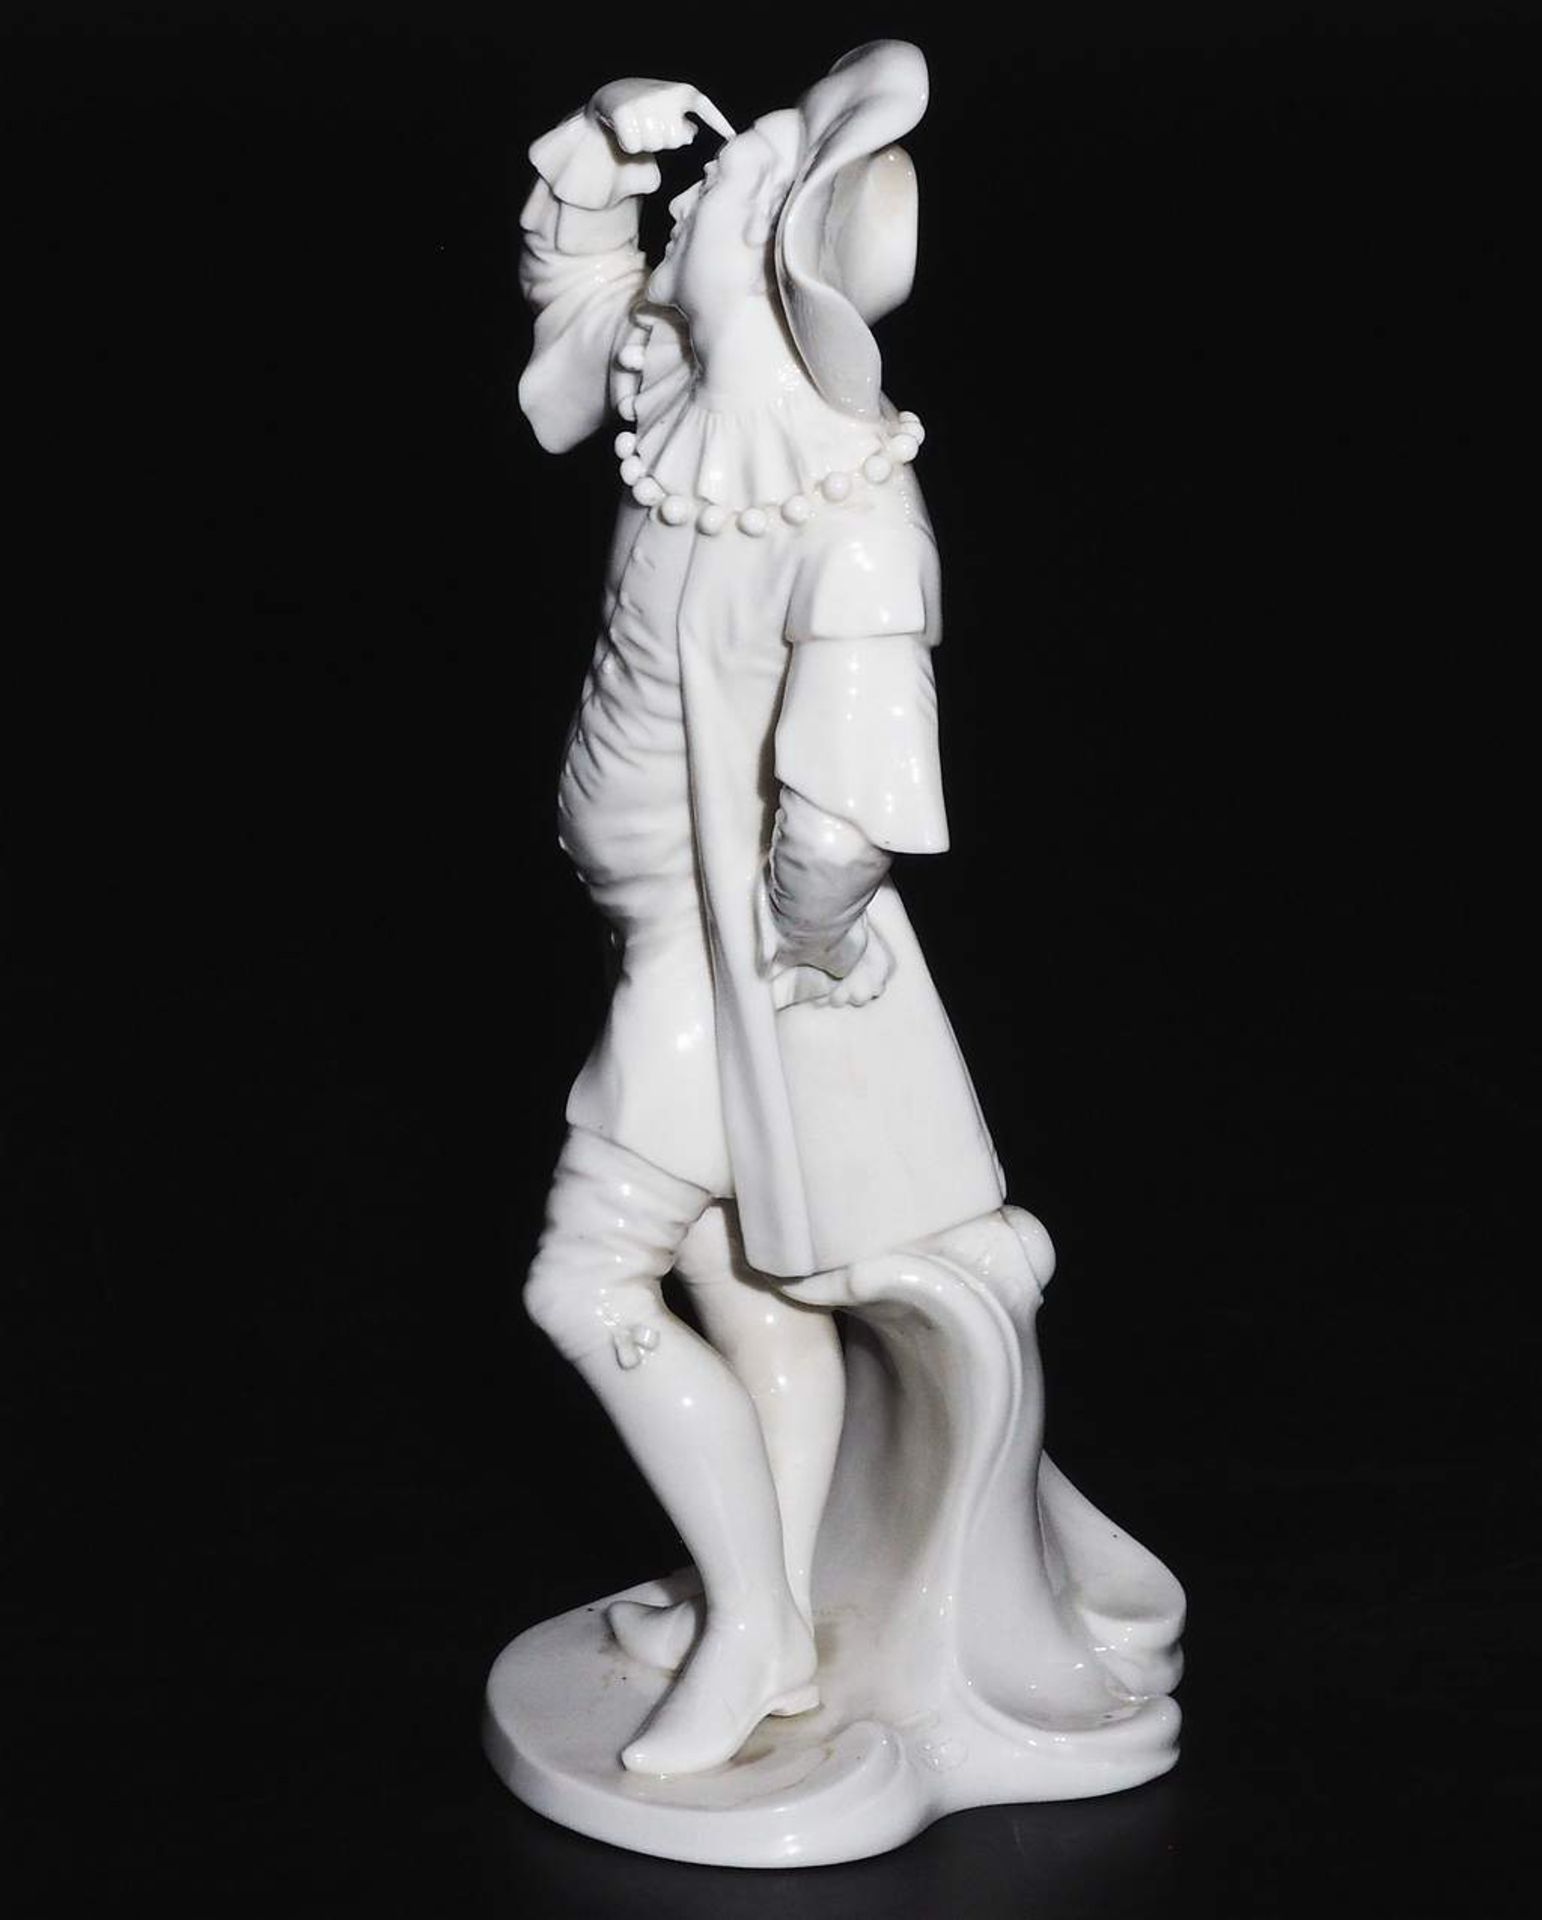 Dottore, Figurine der Commedia dell'arte. NYMPHENBURG, 20. Jahrhundert. - Image 5 of 7